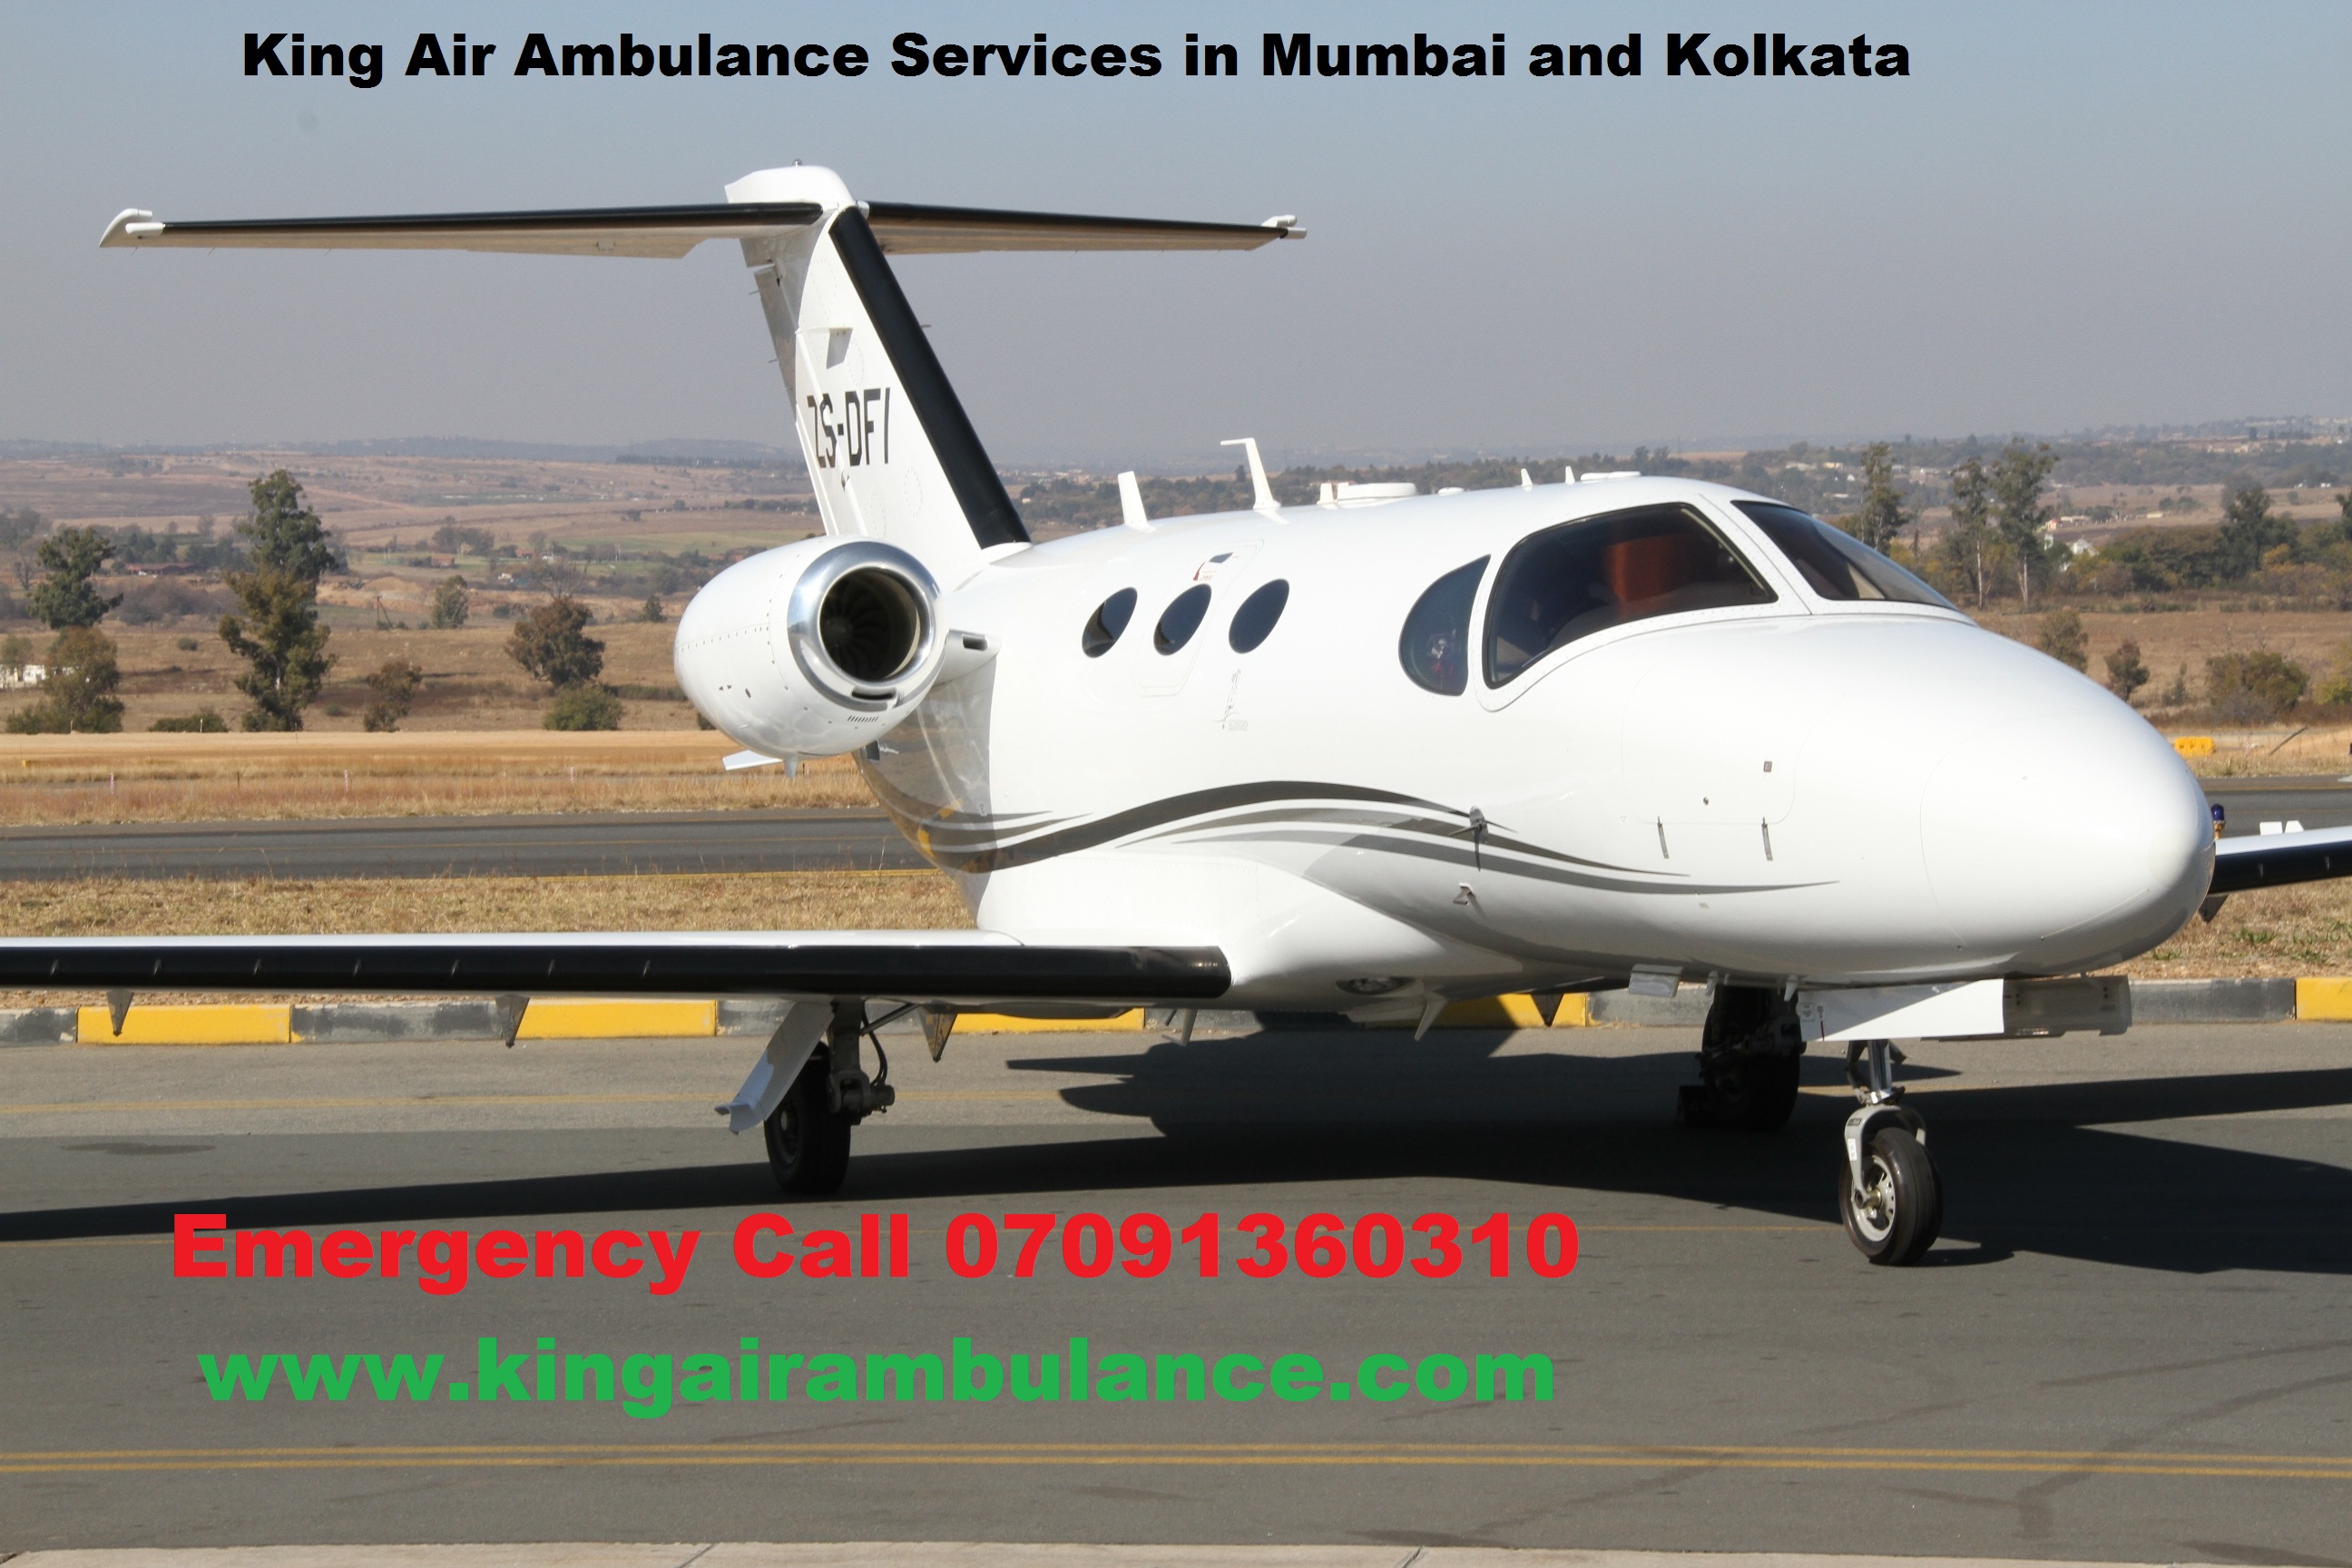 King Air Ambulance Services in Mumbai and Kolkata